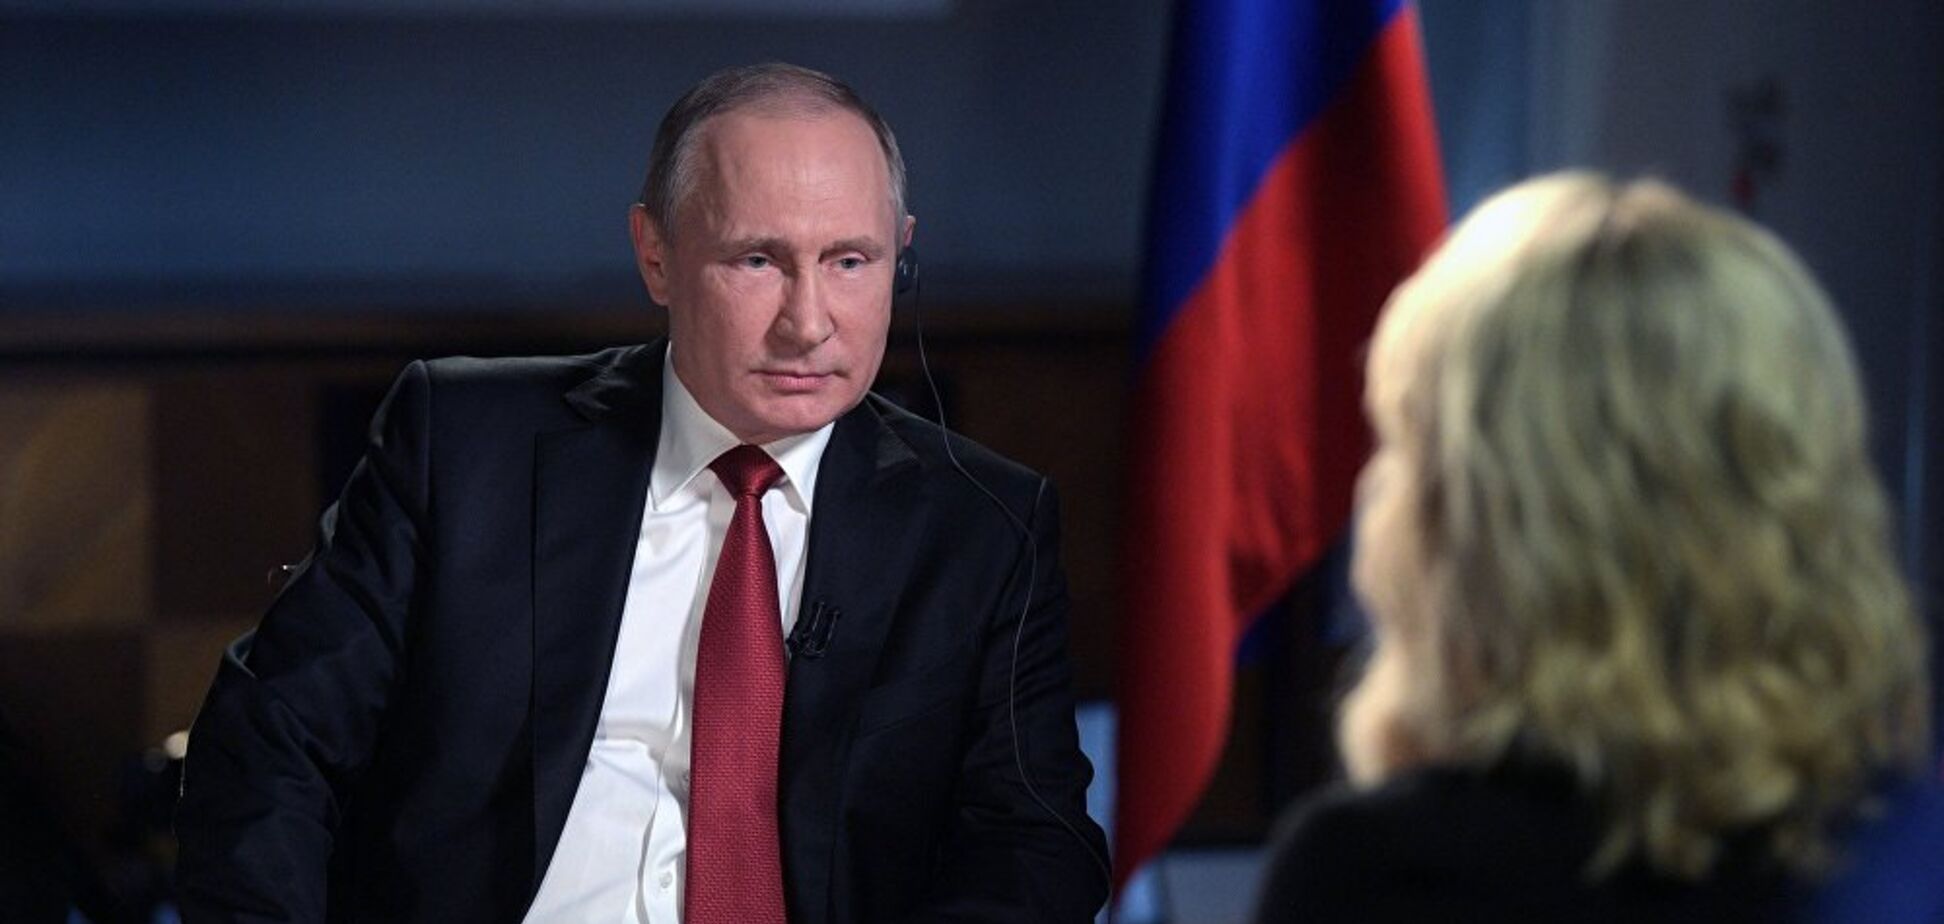 Интервью Путина: условный президент 'лепит горбатого' перед камерами